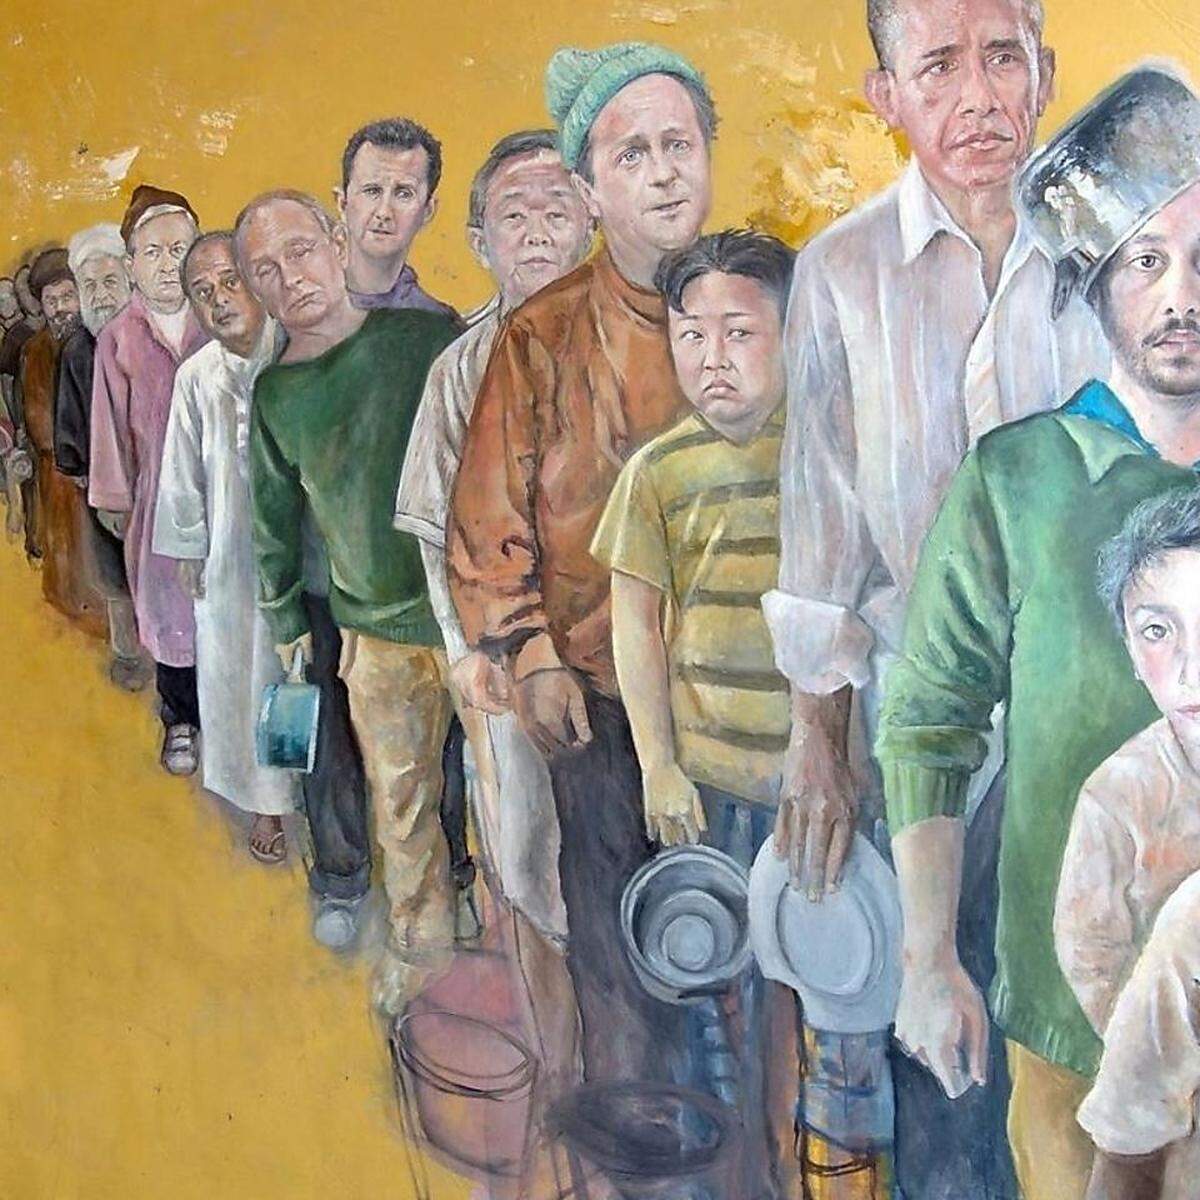 "The Queue" heißt dieses Öl- und Acrylbild von Abdalla Al Omari: die Warteschlange. Es zeigt Menschen, die auf bei einer Essensausgabe warten - und offenbar nicht im besten Zustand sind. Sieht man genauer hin, erkennt man die Gesichter von Barack Obama, Kim Jong-un, David Cameron, Wladimir Putin, Baschar al-Assad oder Recep Tayyip Erdogan.